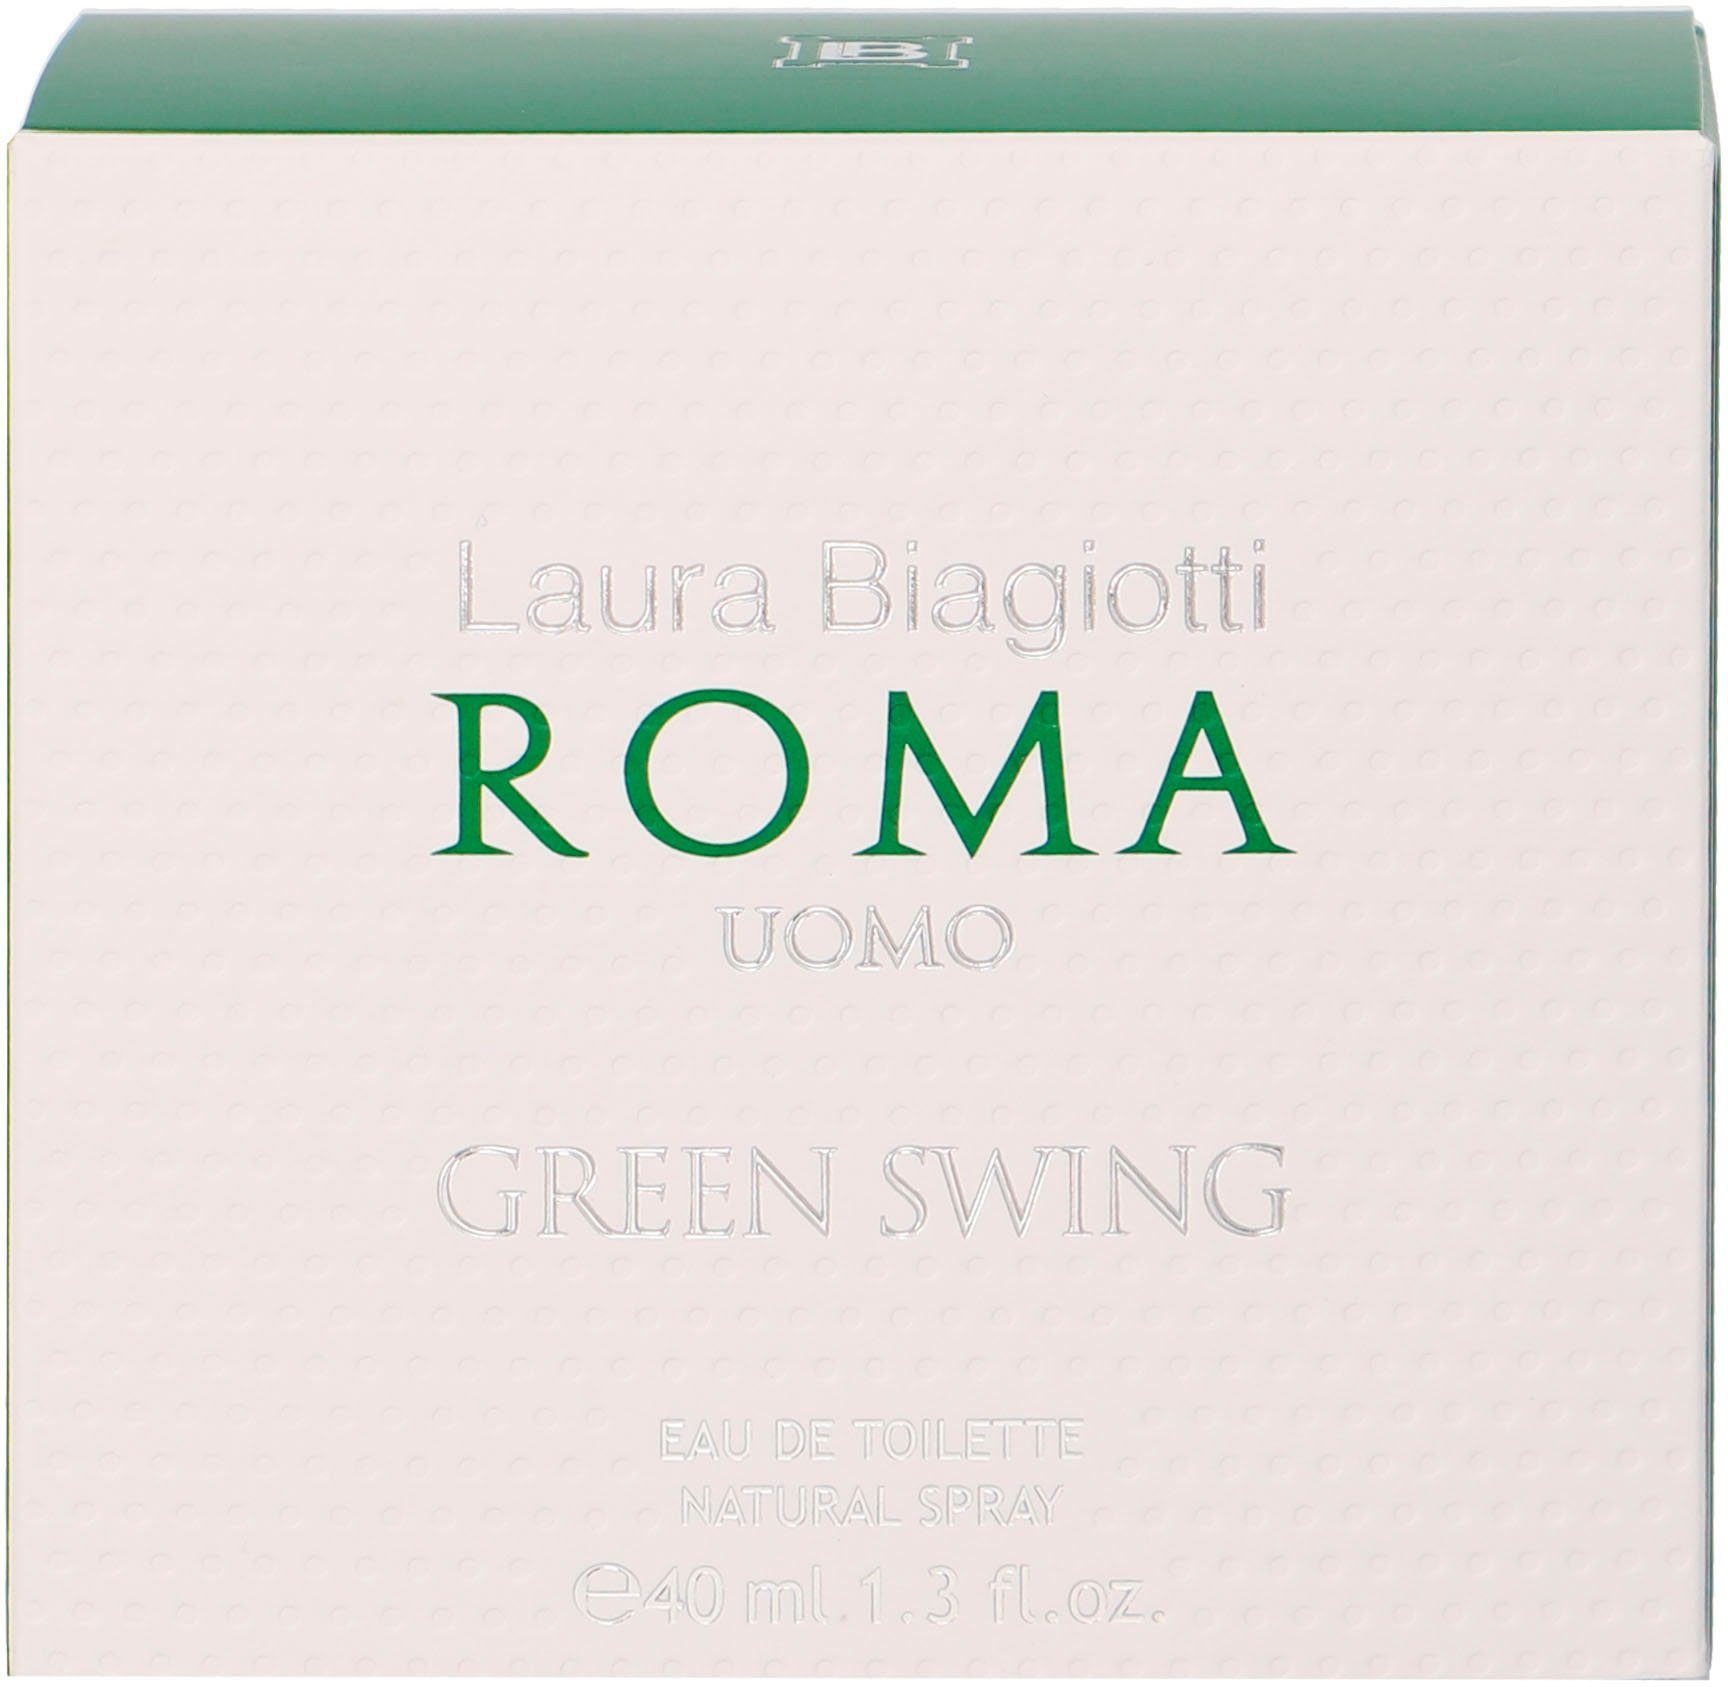 Swing Green Roma Toilette de Laura Uomo Eau Biagiotti